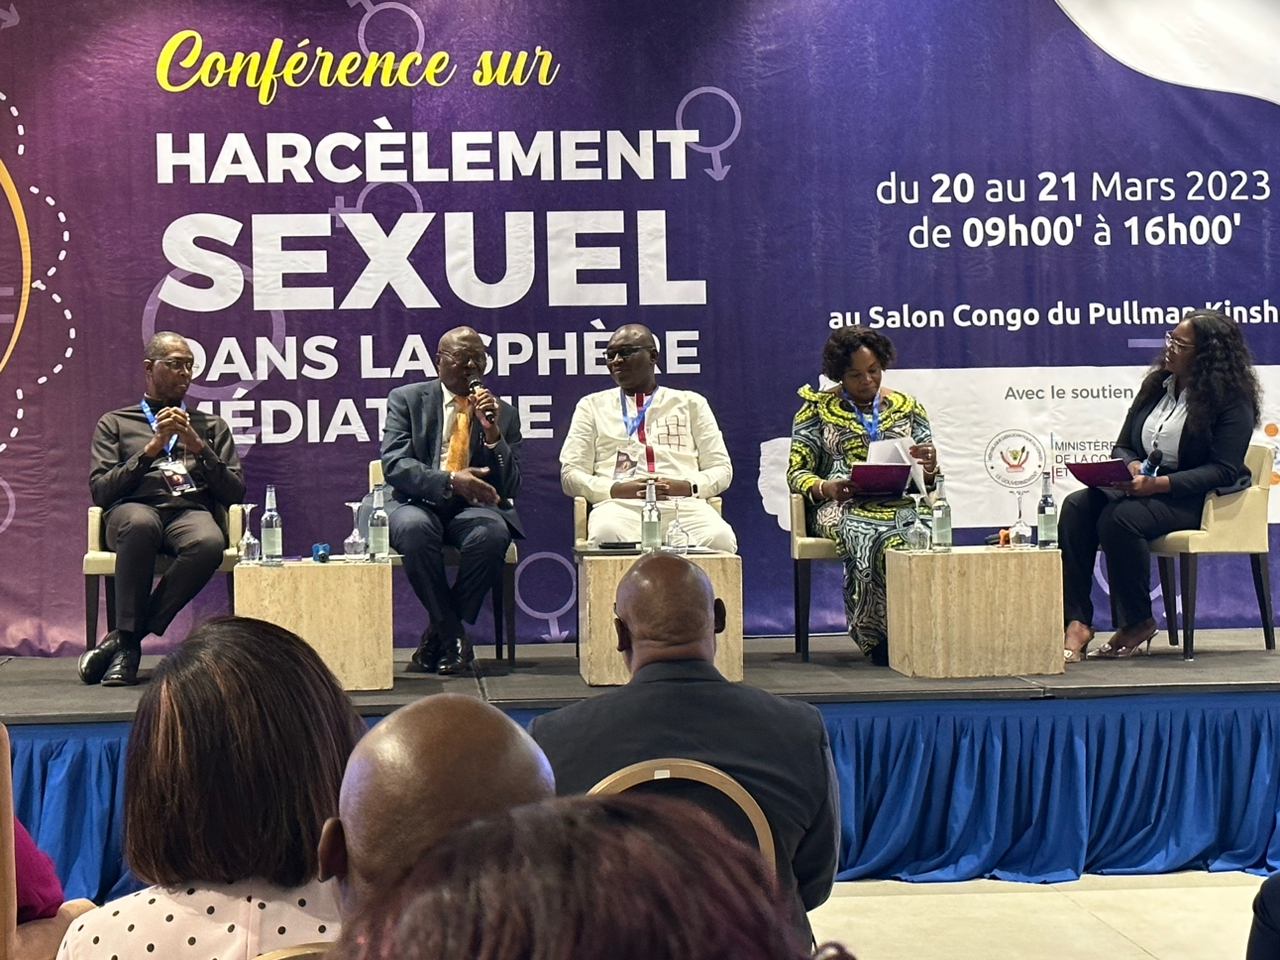 Ouverture à Kinshasa  de la Conférence sur le harcèlement sexuel dans la sphère médiatique 